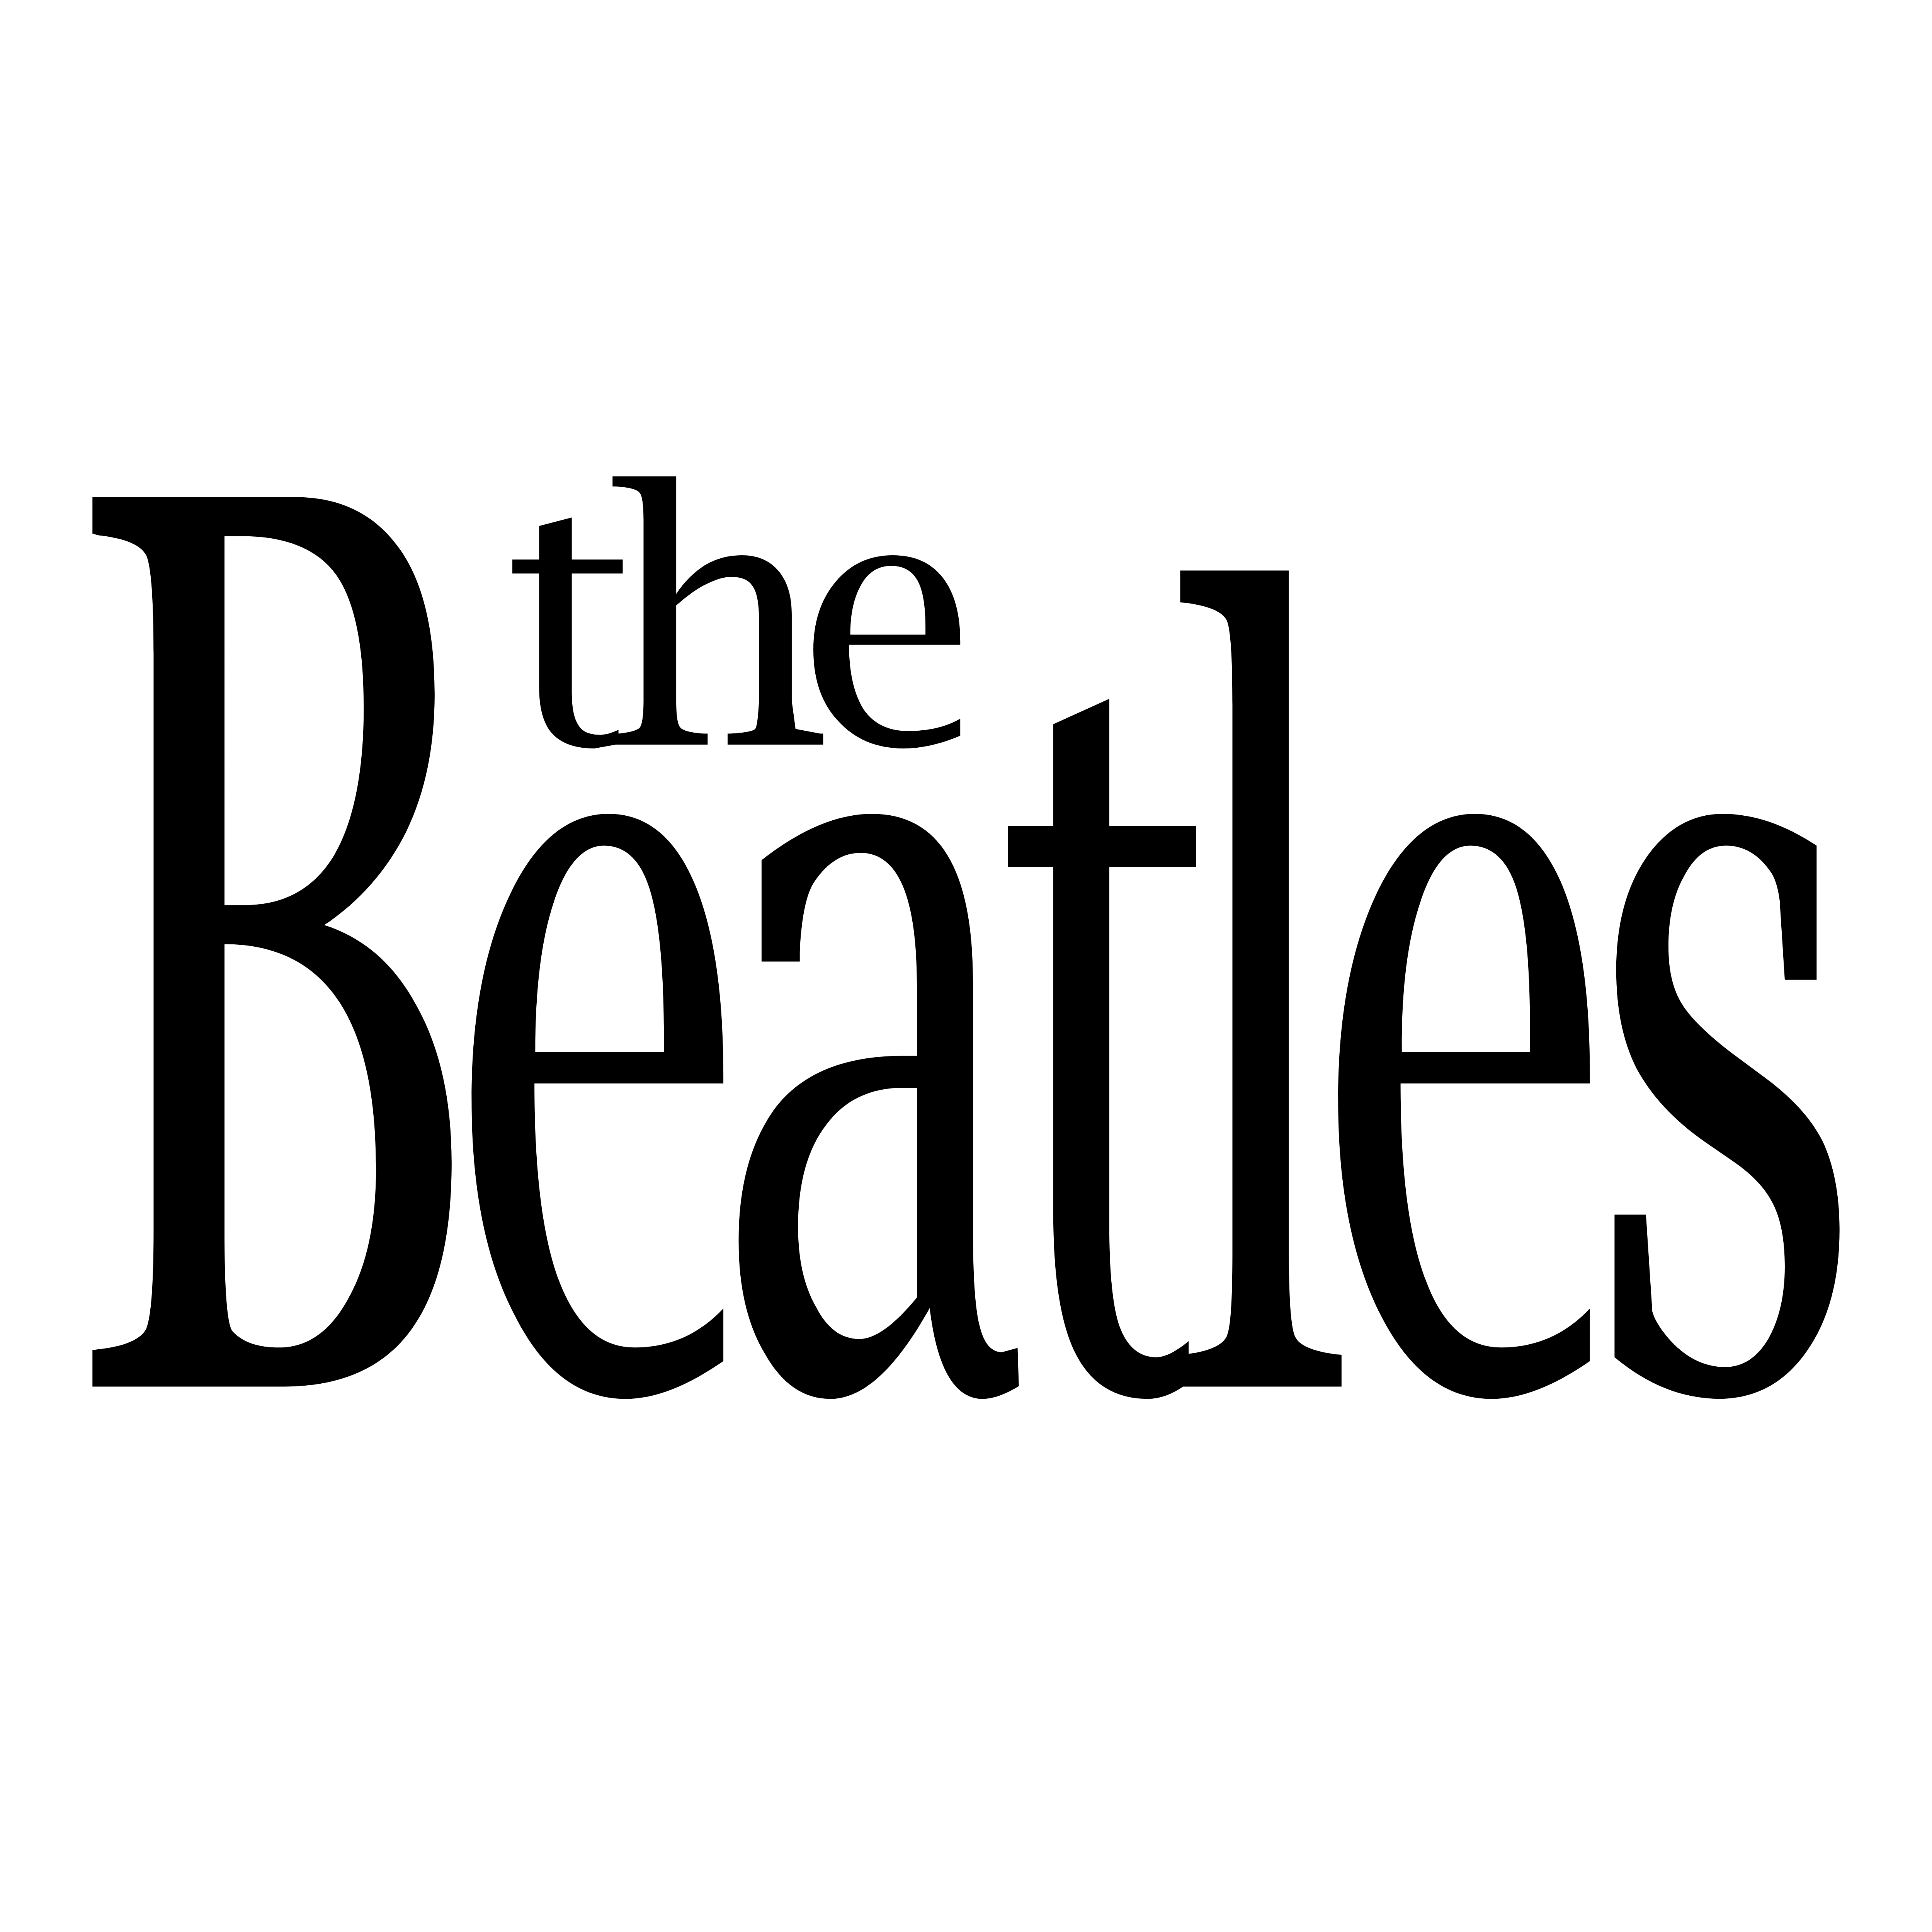 The Beatles Logo Png | Pngbar